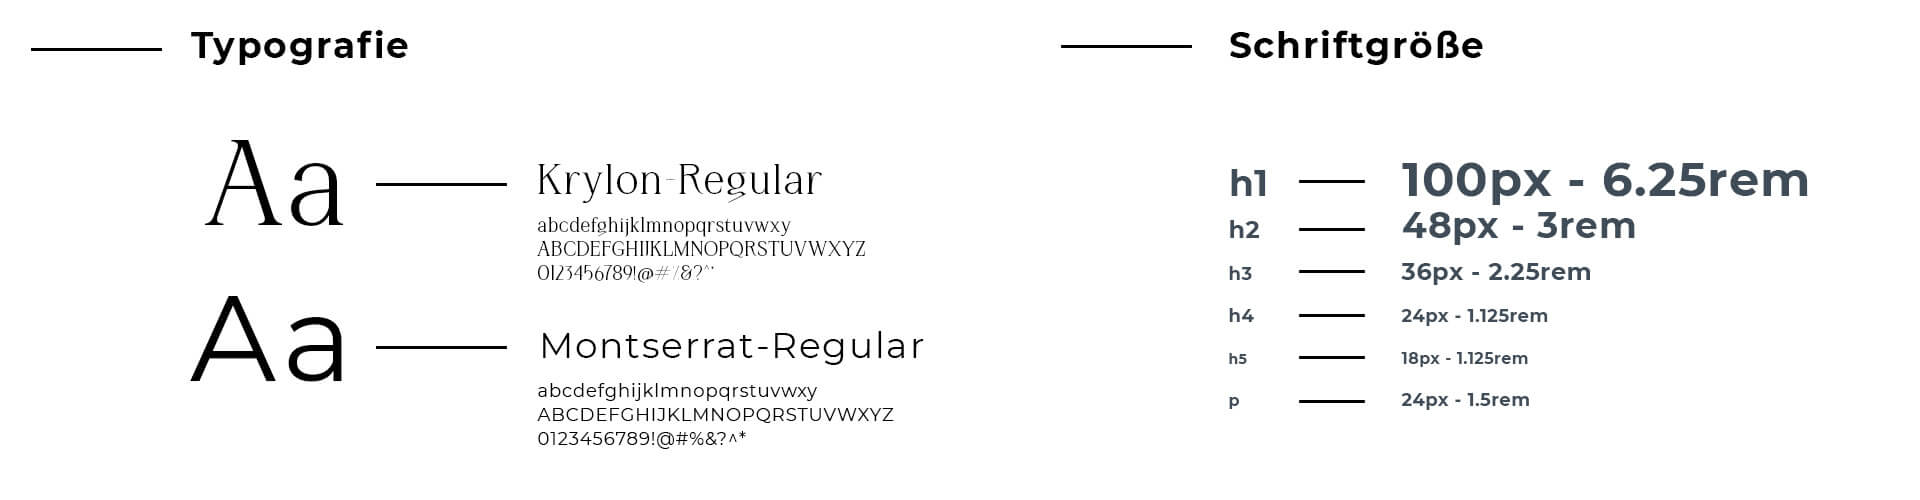 Webseiten Typografie